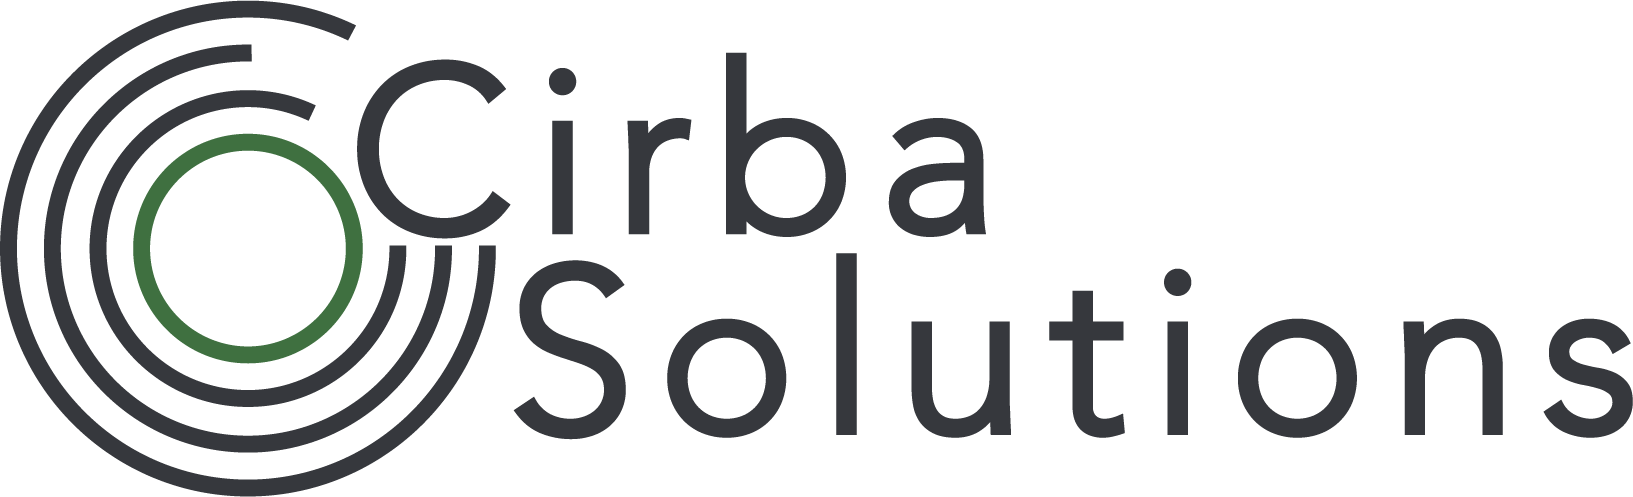 Cirba Solutions logo